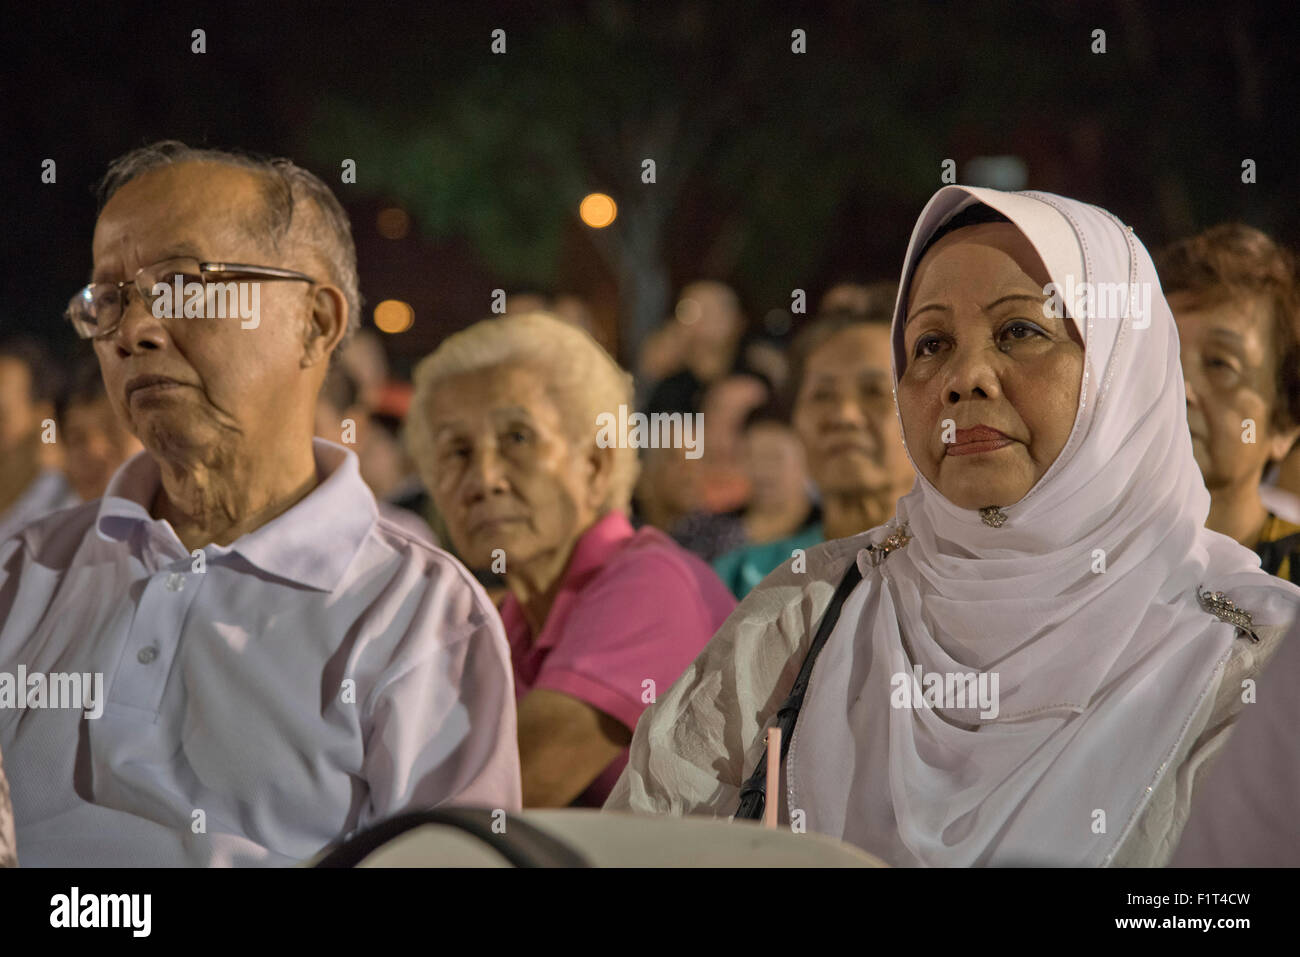 Massen an einem Menschen Action Party (PAP) Wahlveranstaltung in Singapur Stockfoto